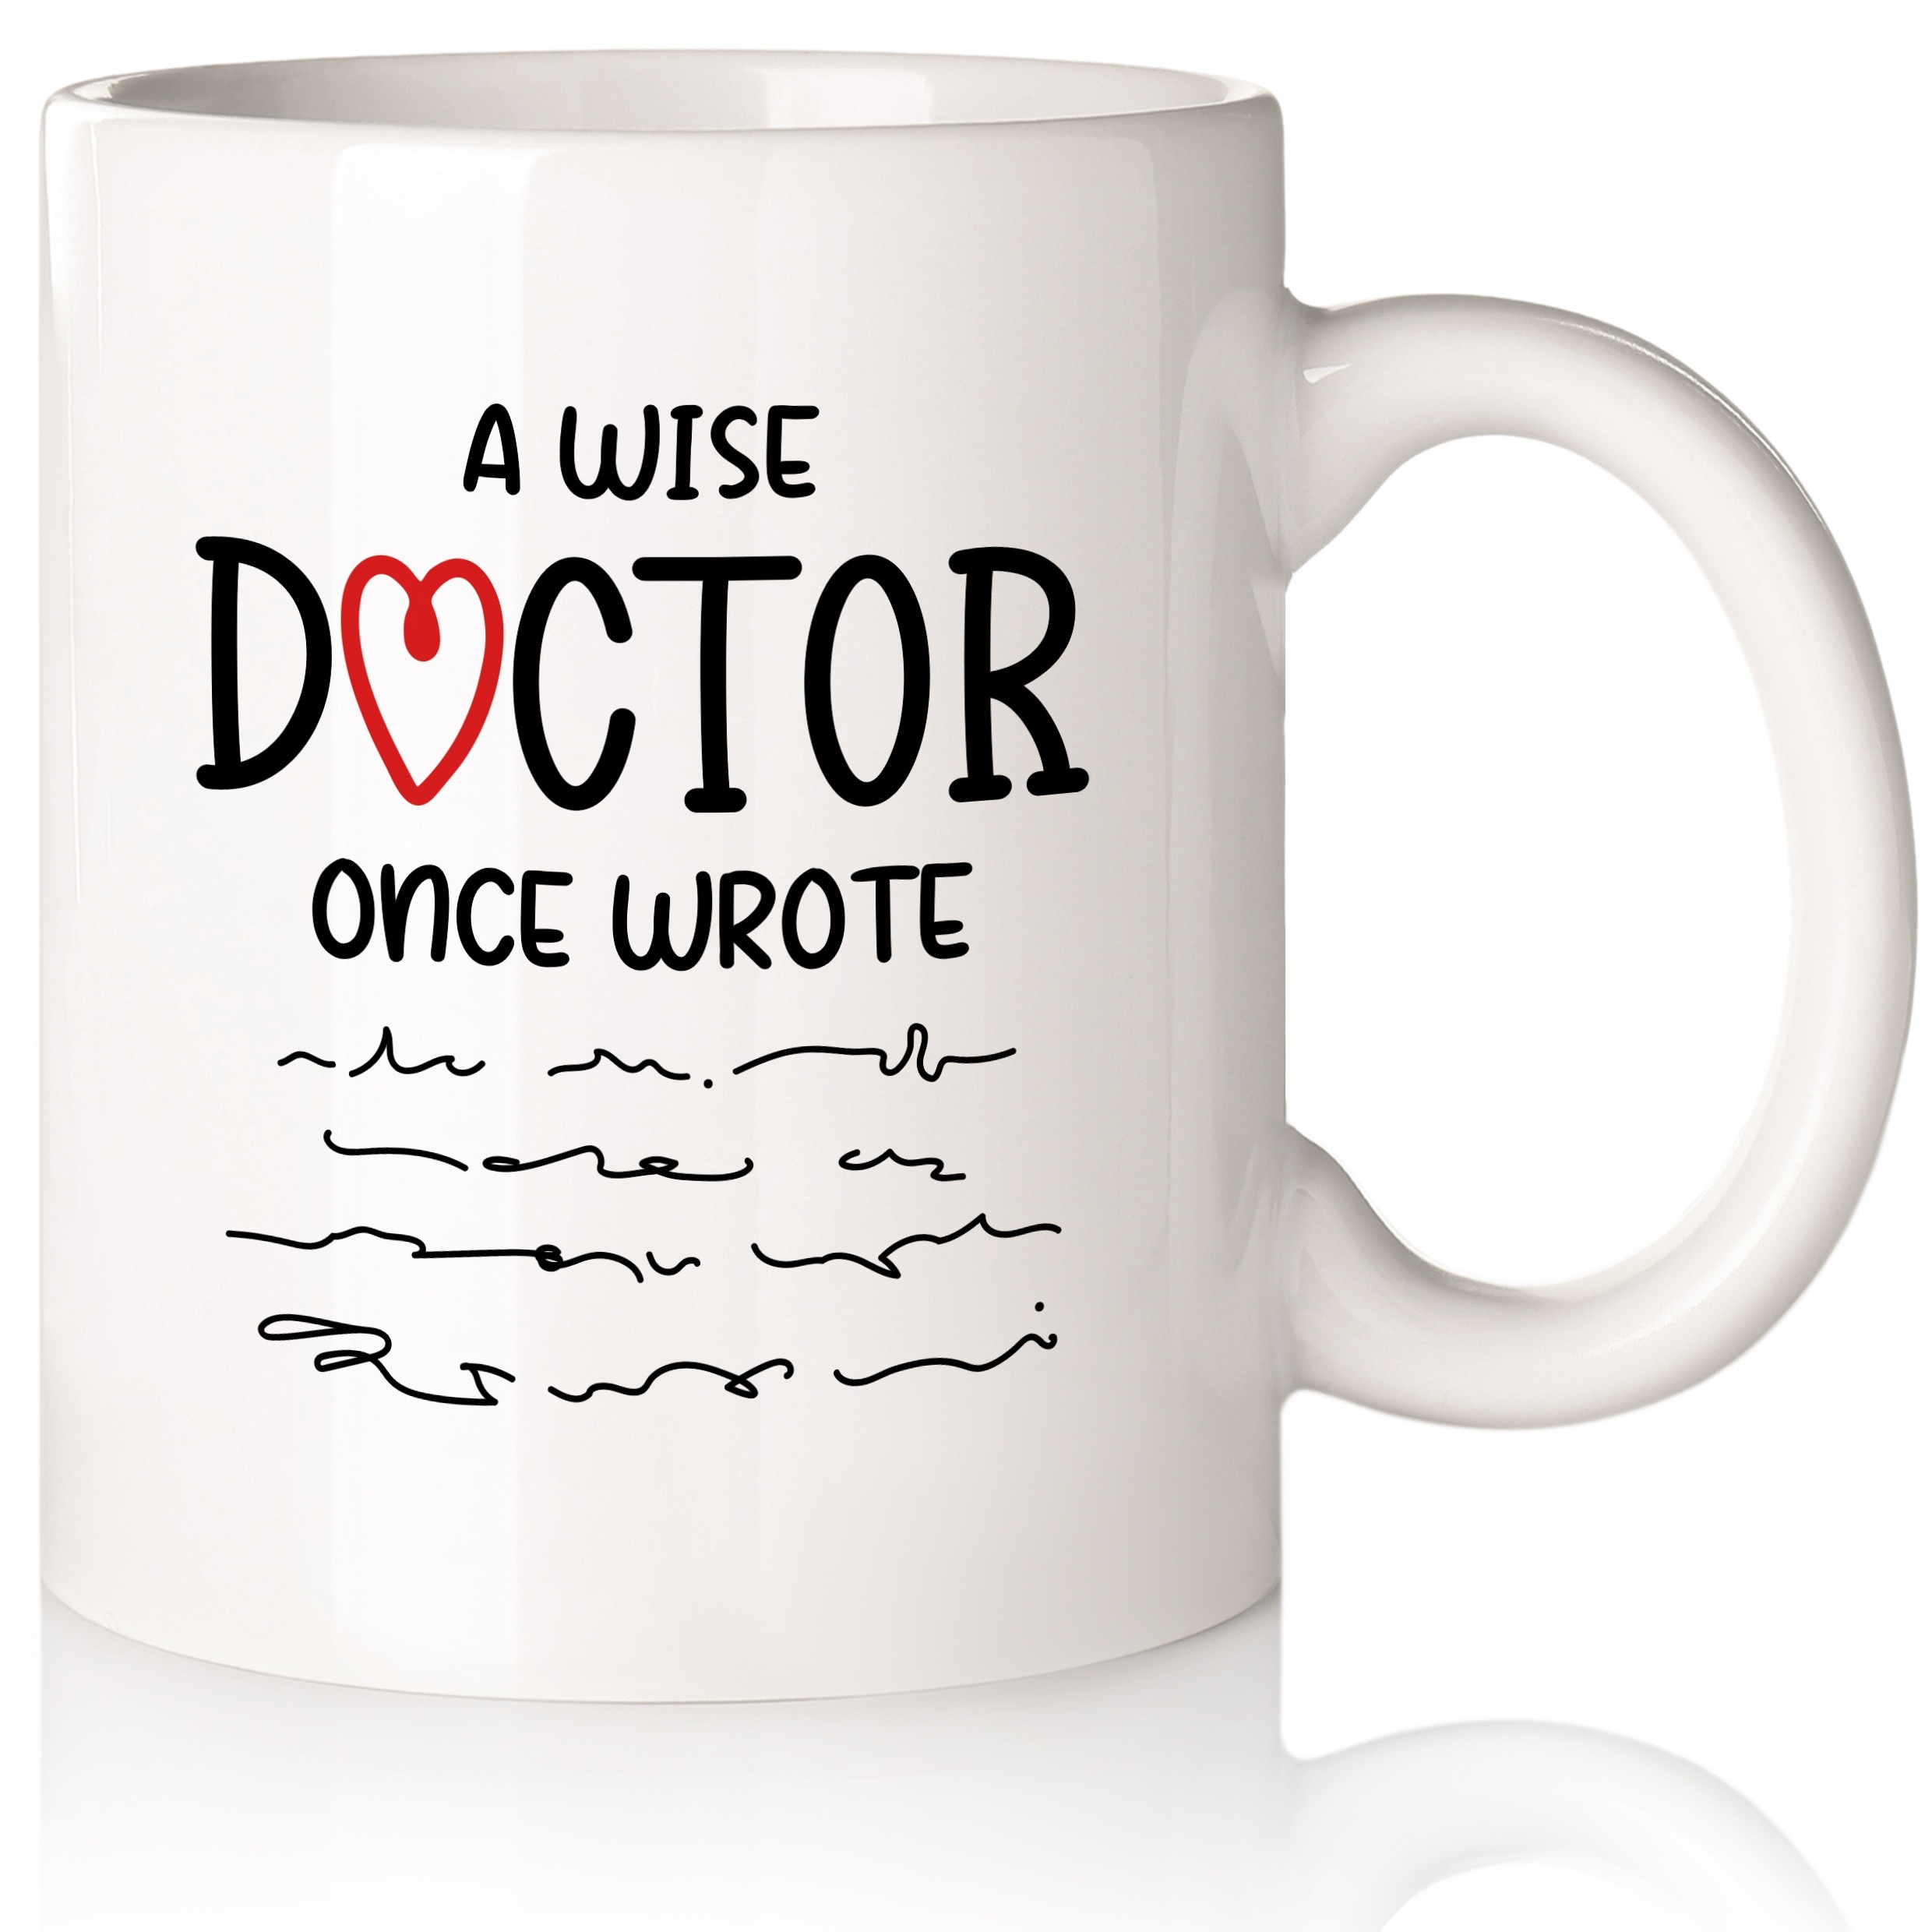  Taza personalizada para doctor, regalos para el doctor, taza de  café para doctores, regalos de graduación para doctores, taza de café para  doctores, regalos médicos para mujeres, taza de doctor, taza